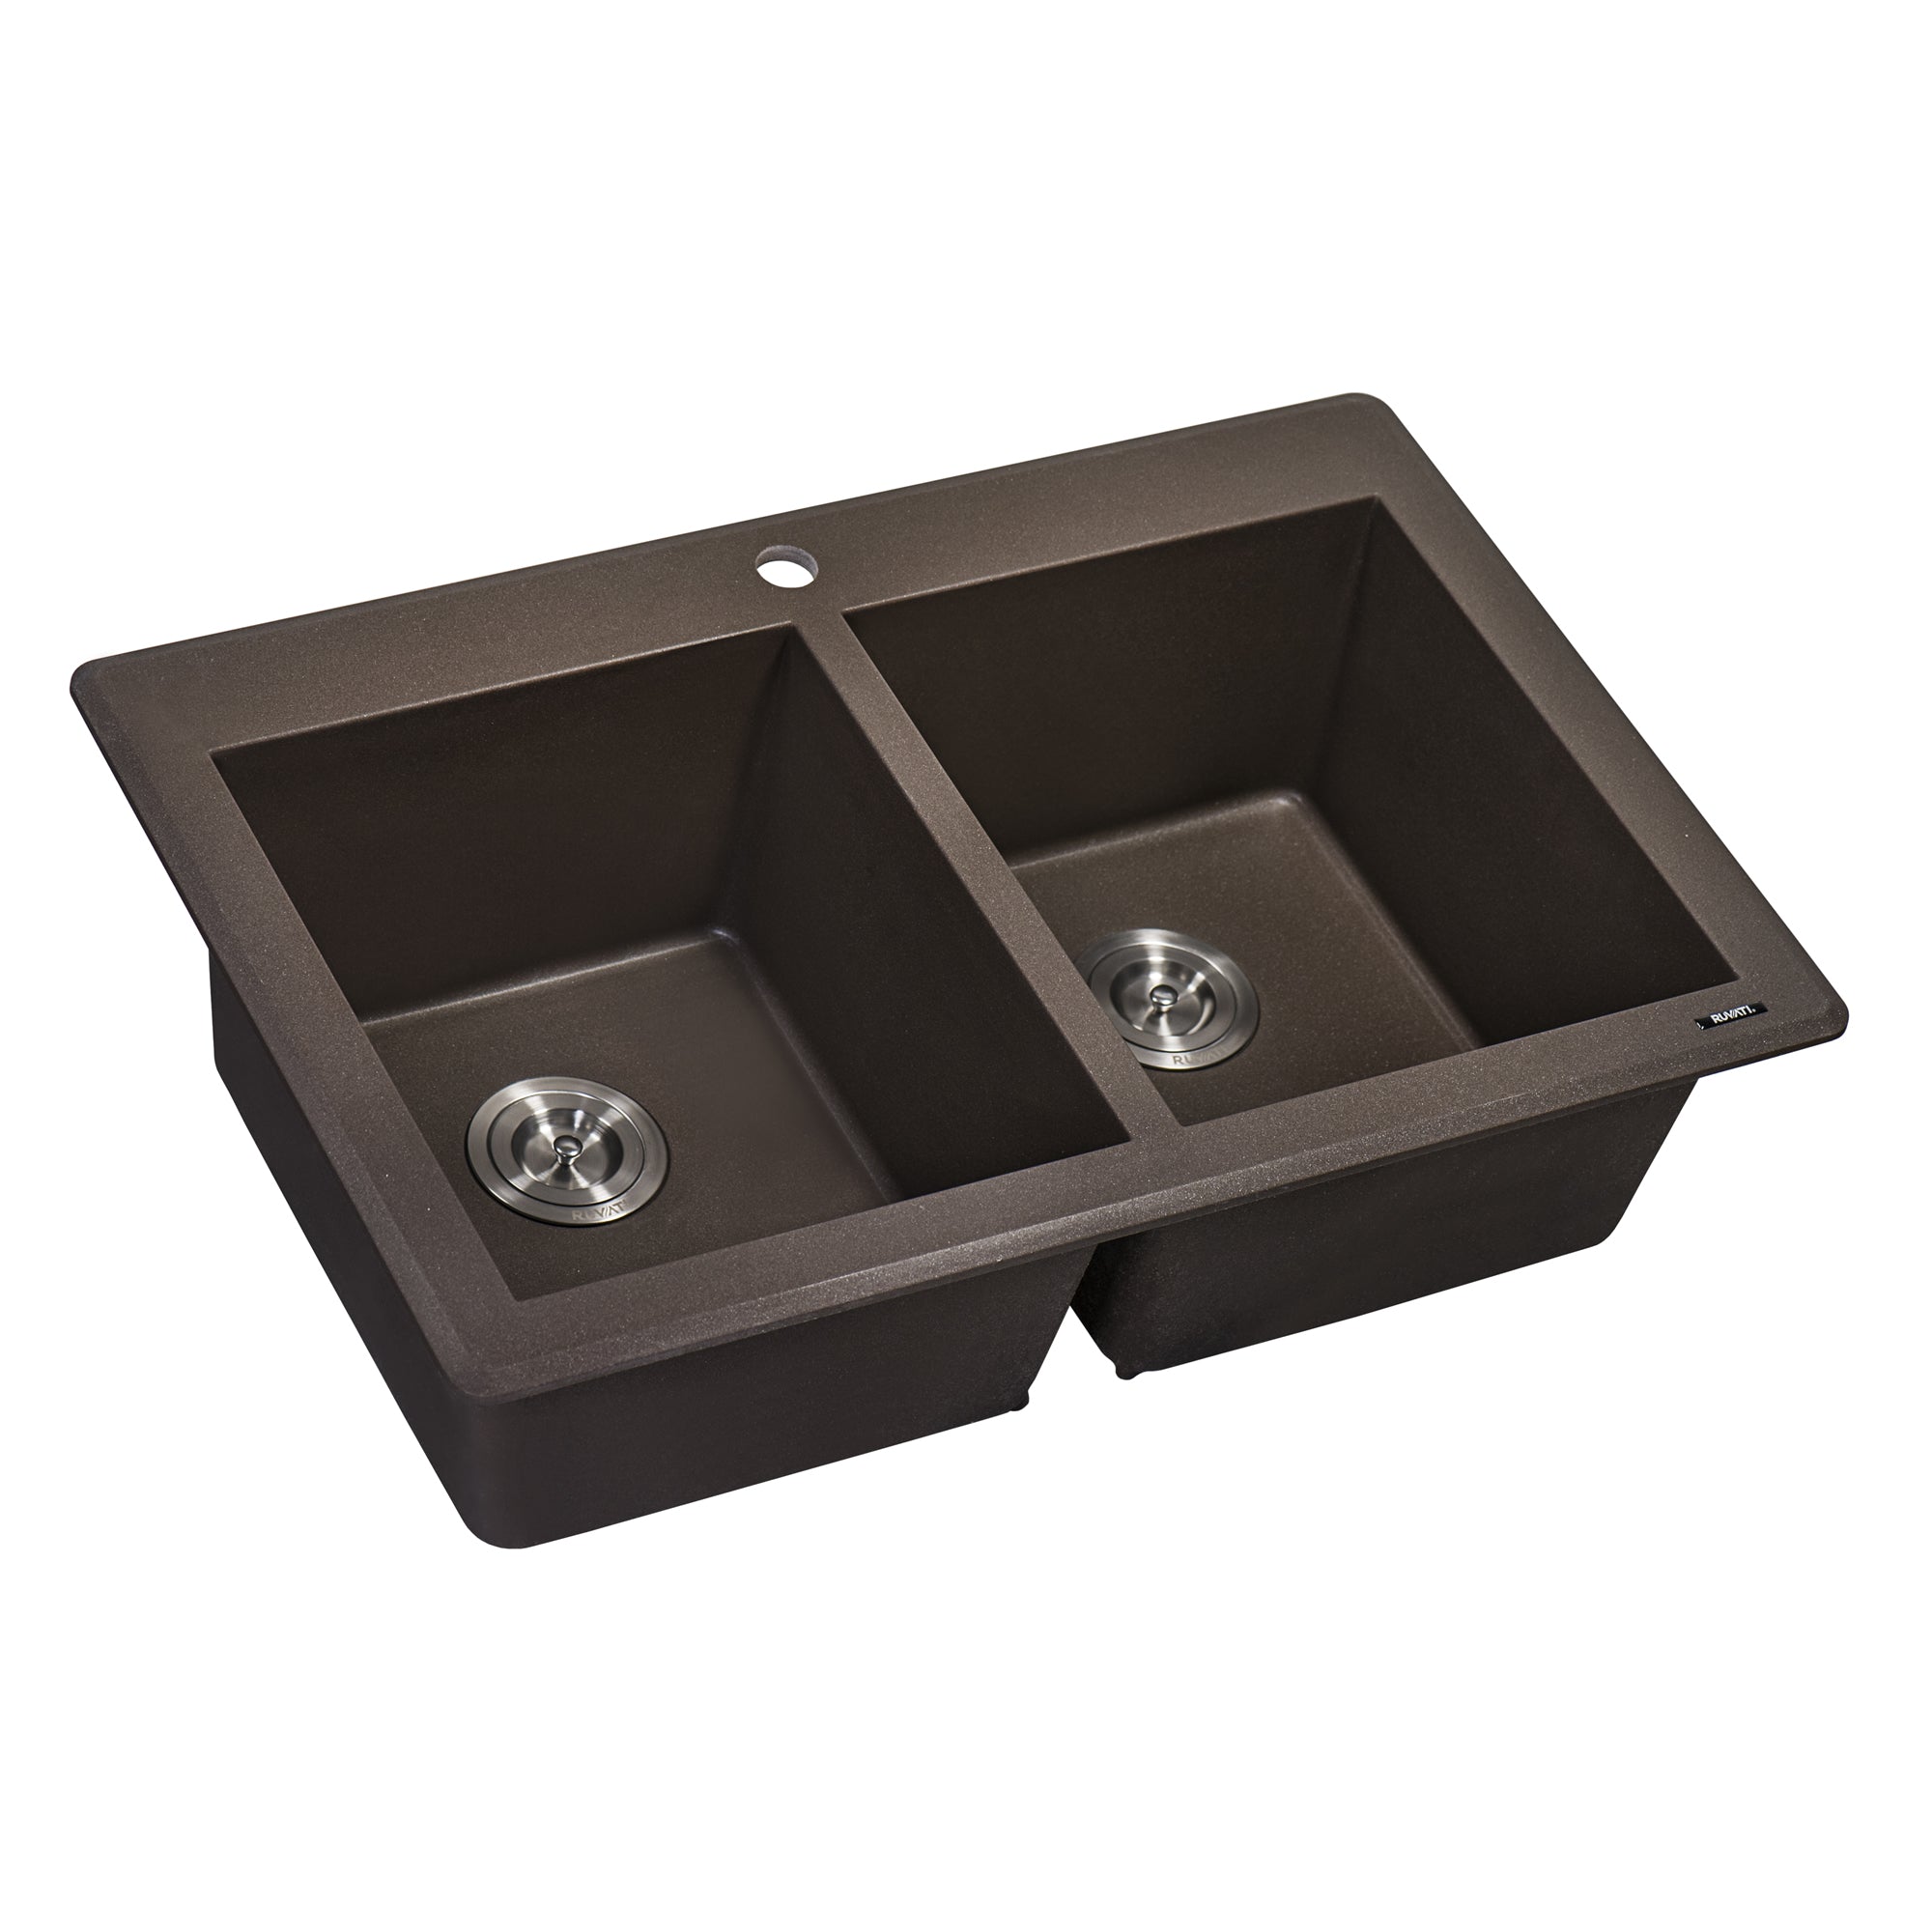 33 x 22 inch epiGranite Dual-Mount Granite Composite Double Bowl Kitchen Sink – Espresso Brown